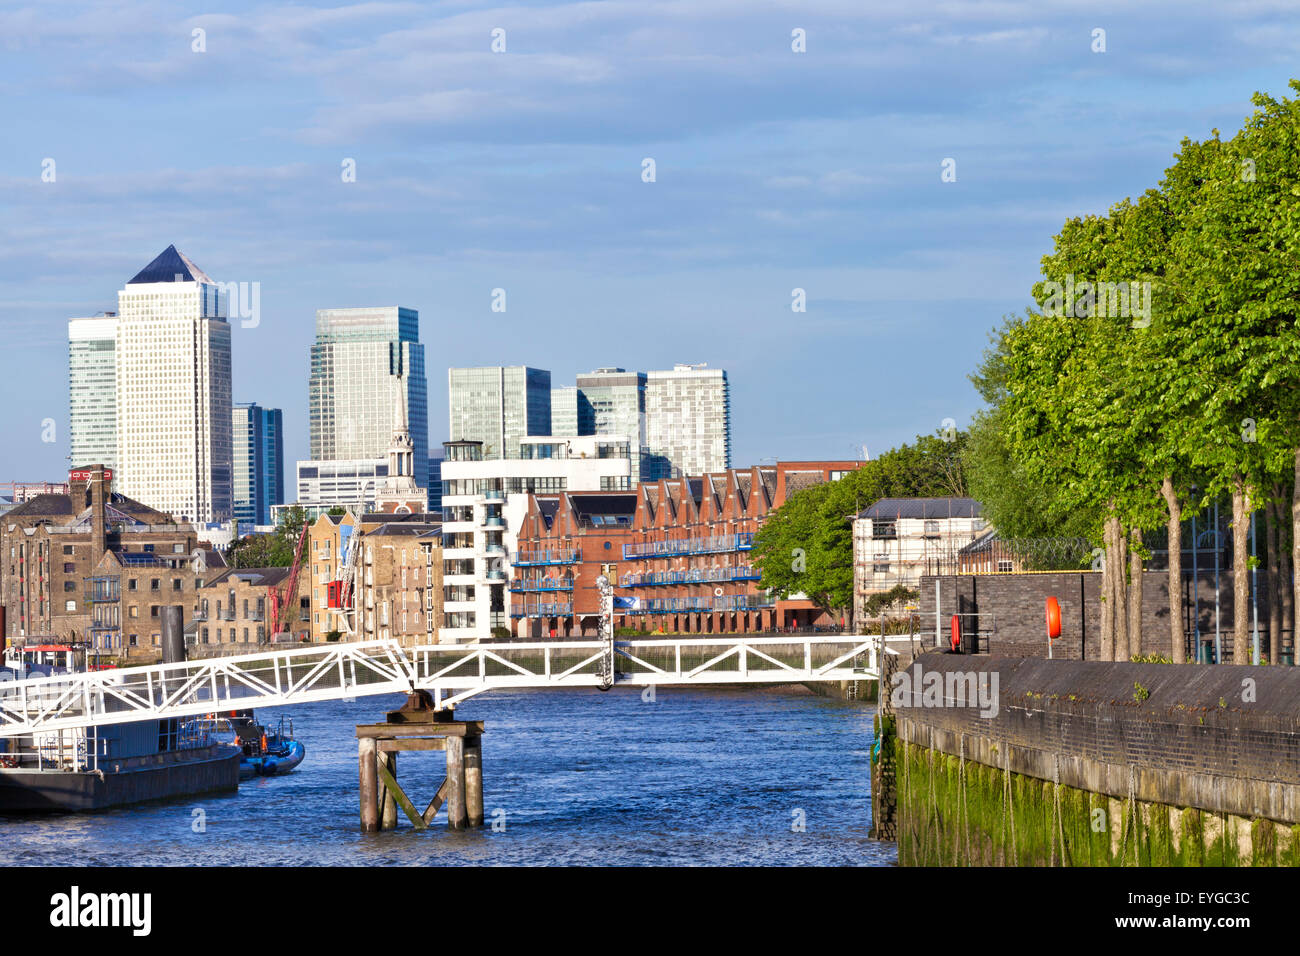 London Canary Wharf Docklands Skyline-Blick auf die Themse entlang Bankside mit grünen Bäumen, Häuser am Wasser im Spätsommer Stockfoto